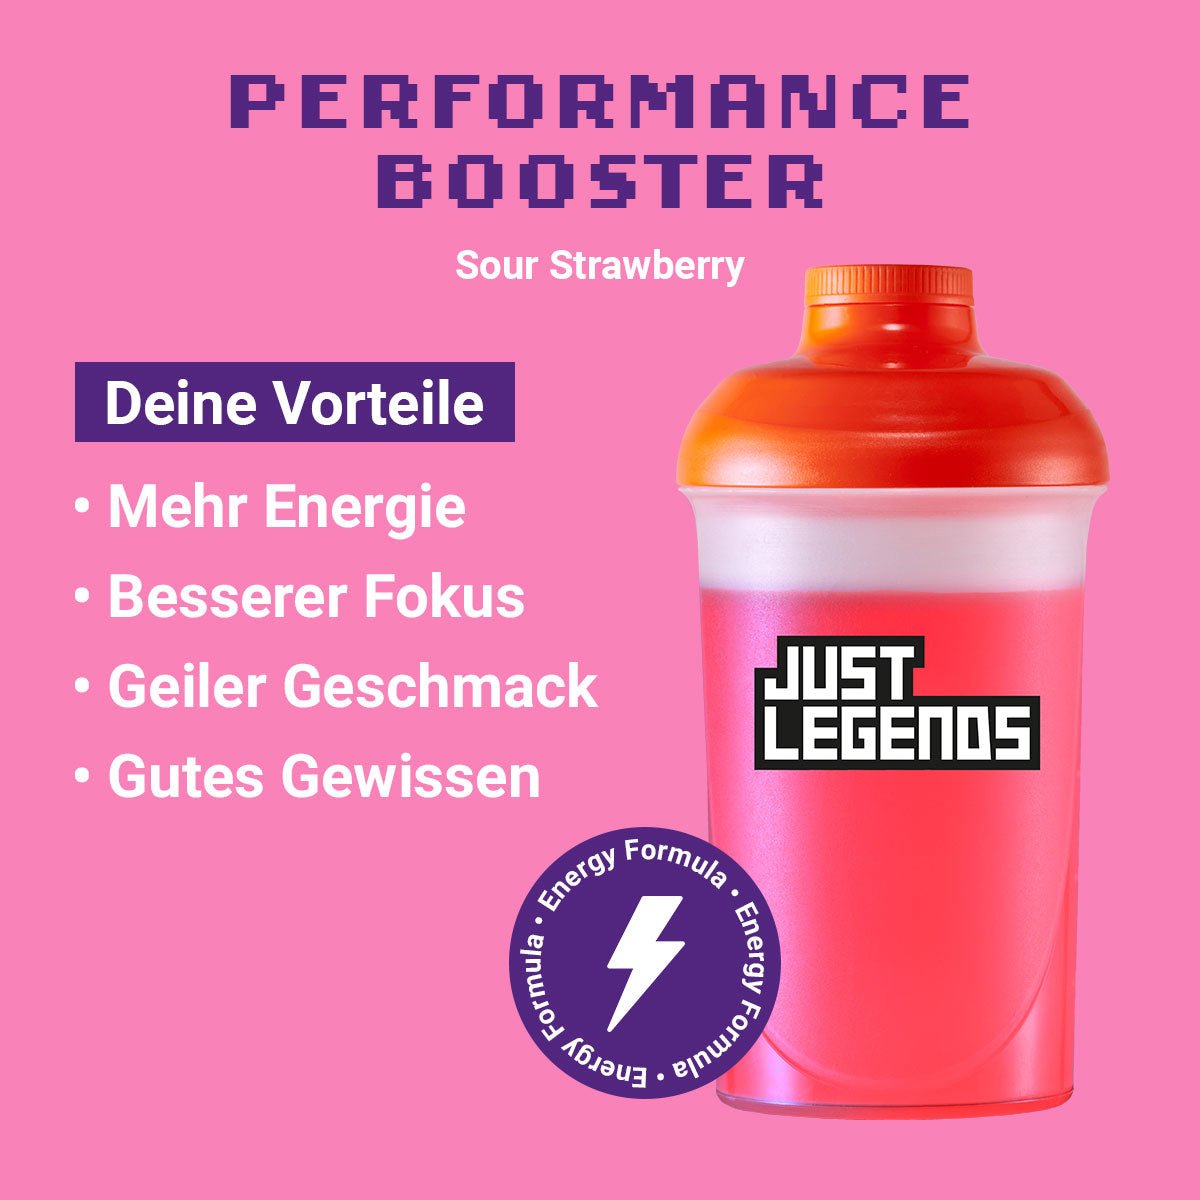 Just Legends Performance Booster Sour Strawberry | Funktionaler, veganer Performance Booster auf Pulverbasis ohne Zucker, mit wenig Kalorien, vielen Vitaminen und natürlichen Aromen.